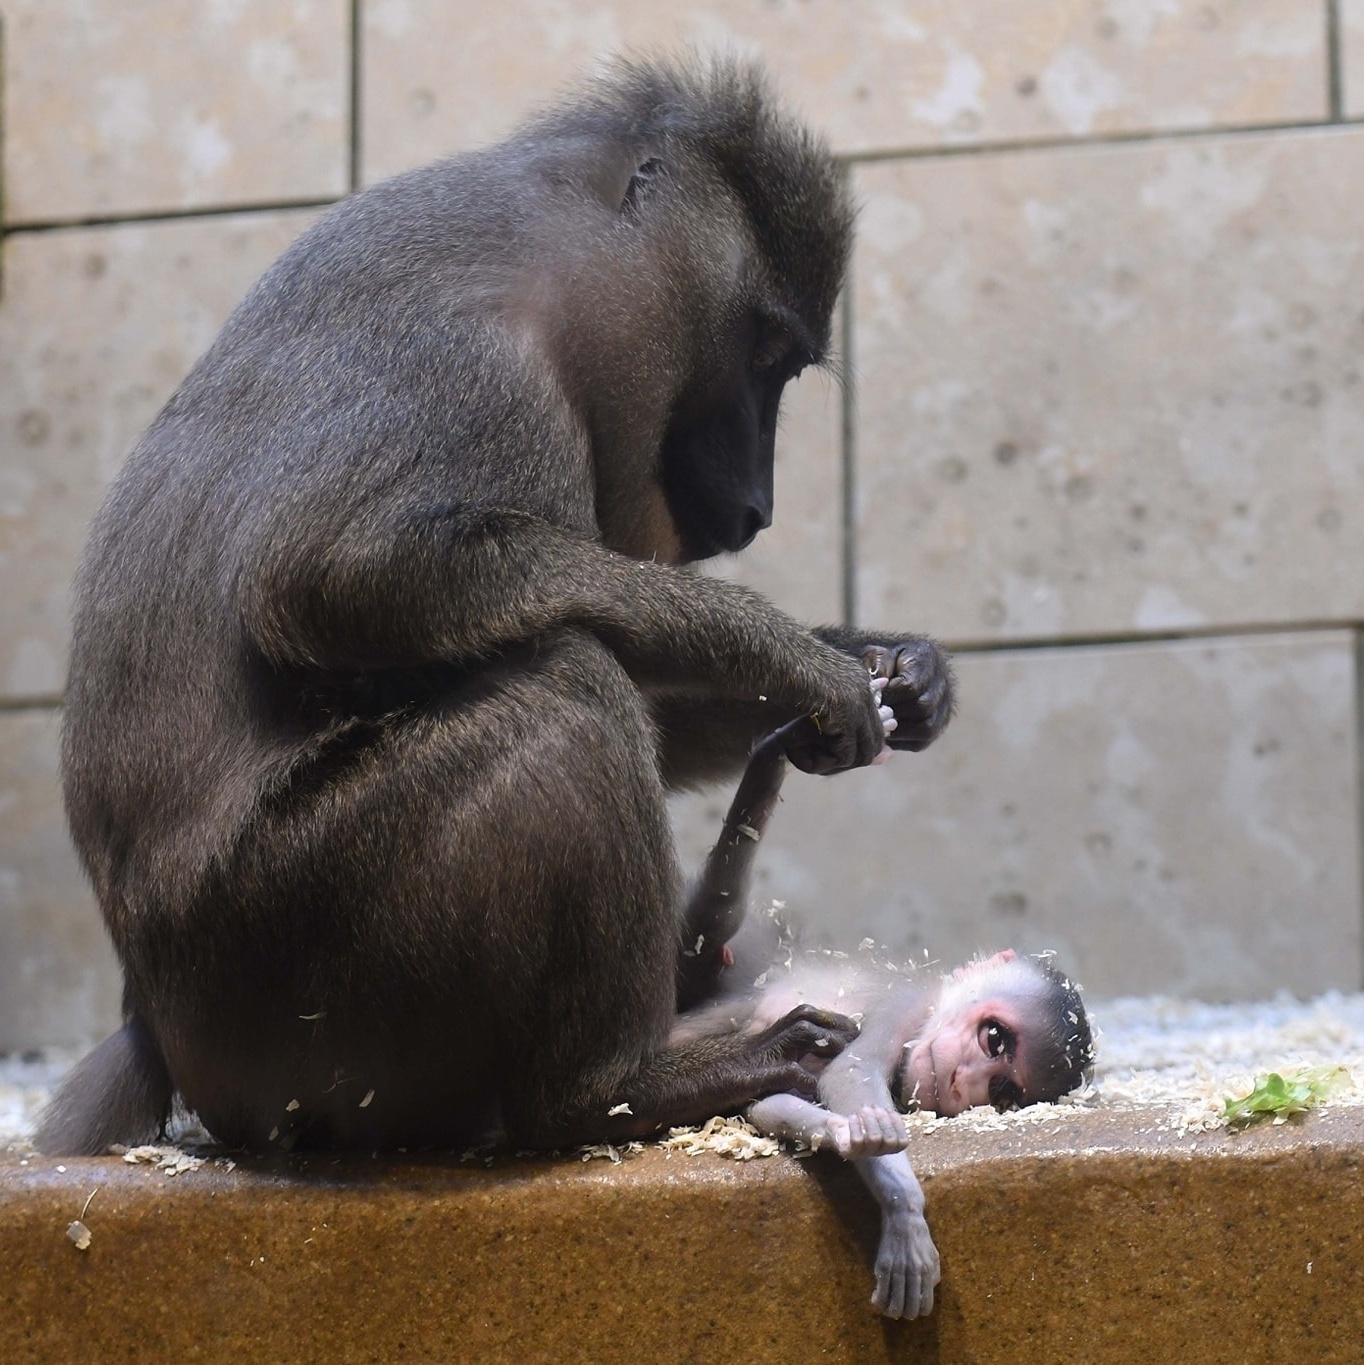 Imagens revelam o exato momento do parto de um macaco